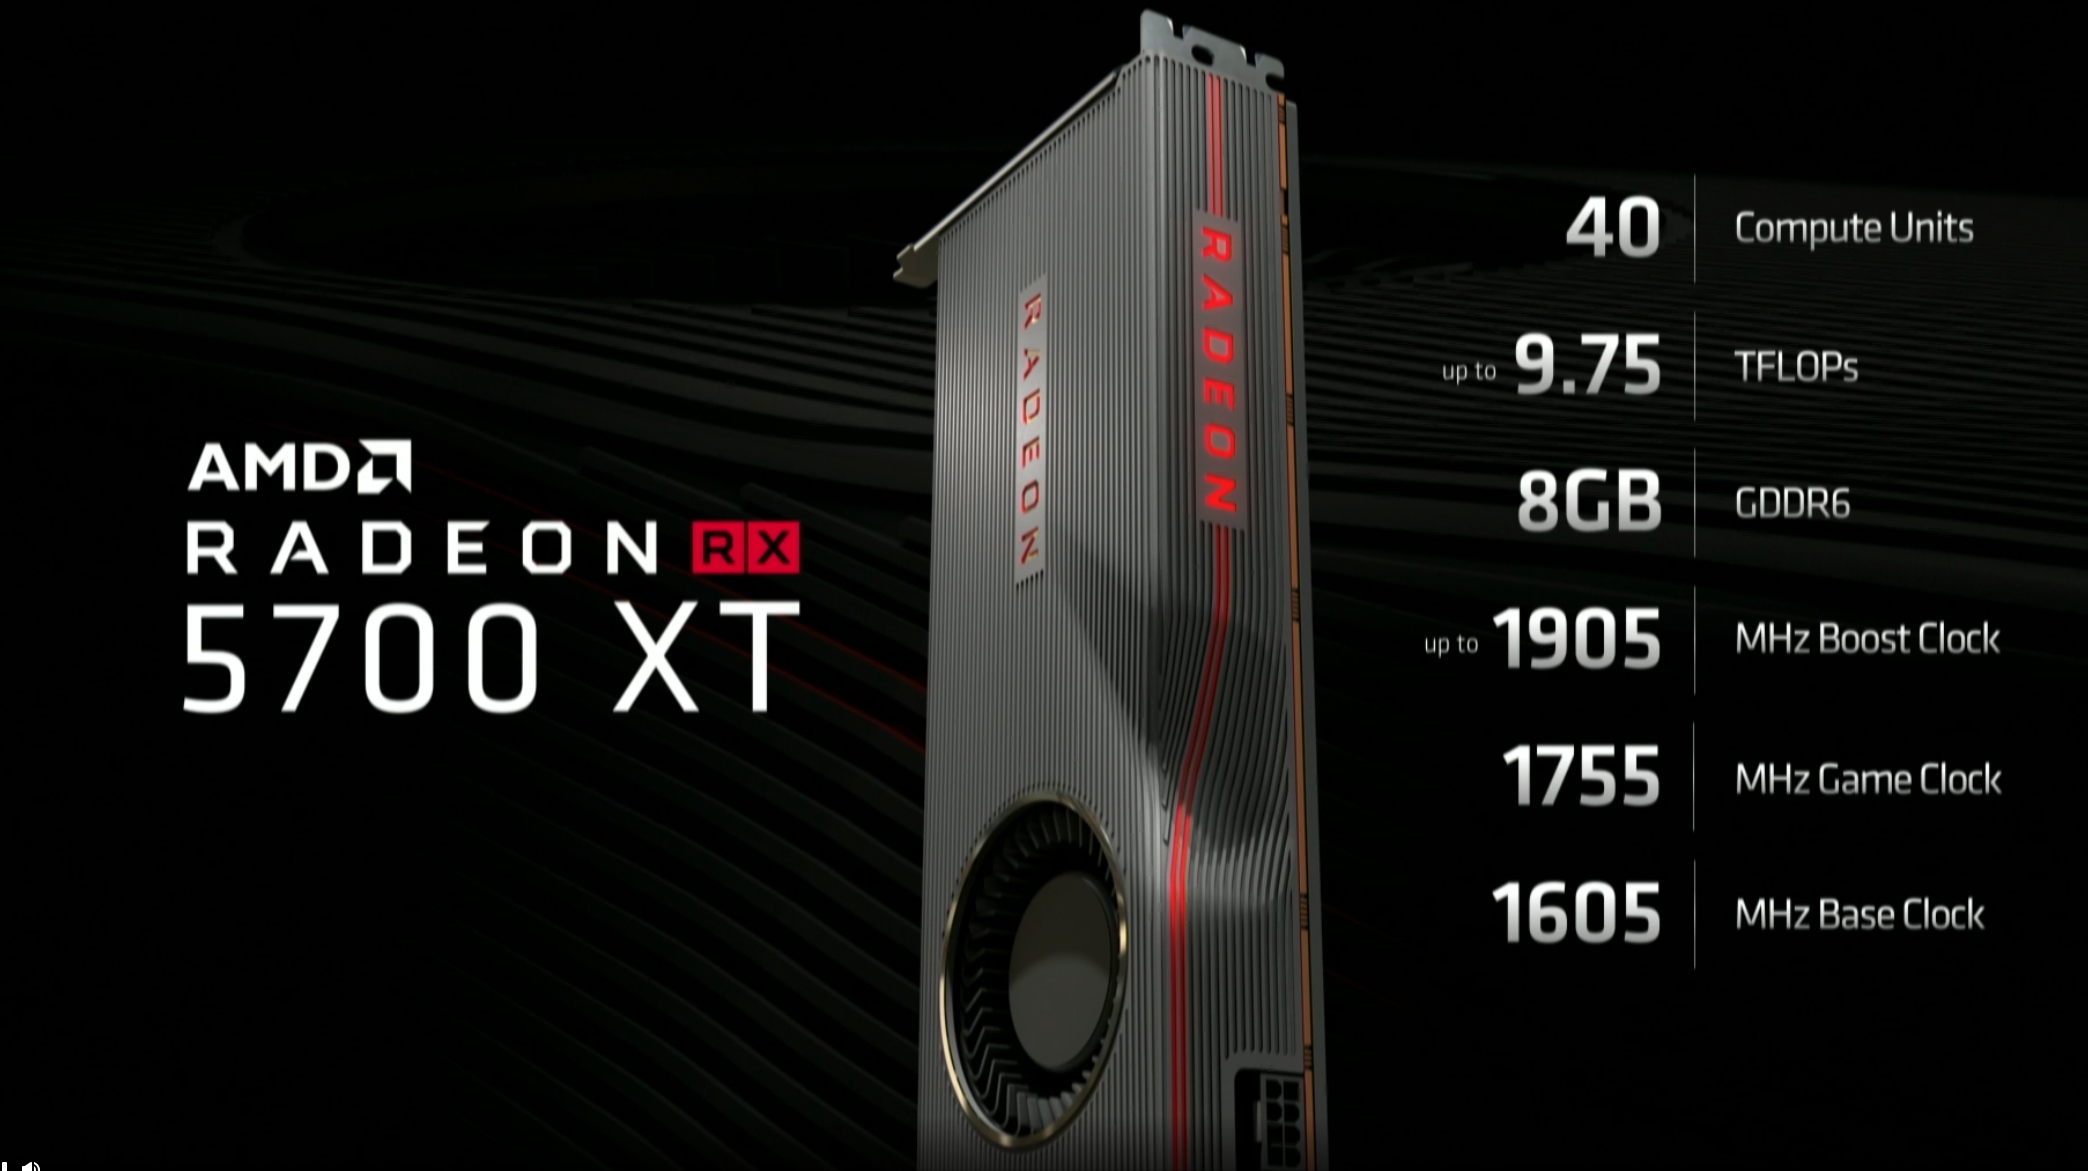 Видеокарты серии AMD Radeon RX 5700 выйдут 7 июля по цене от $380